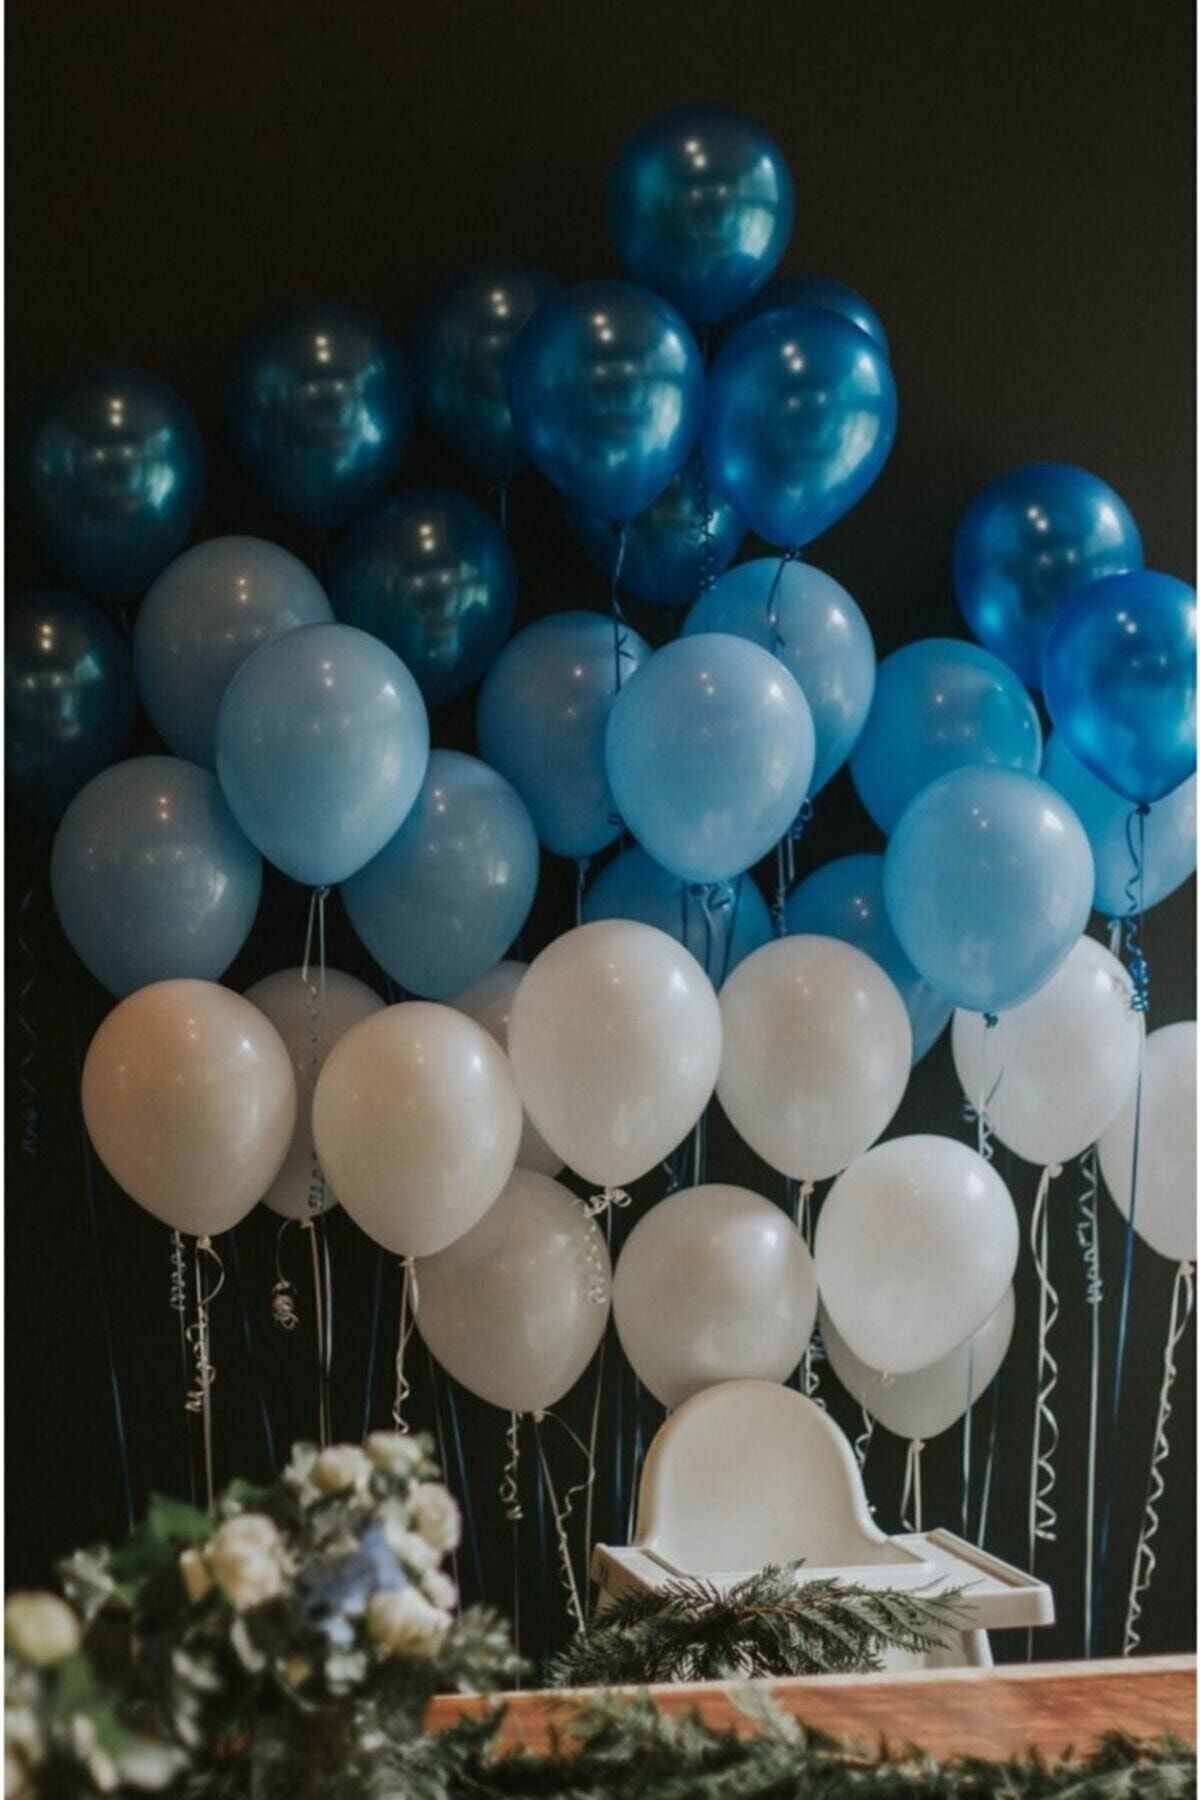 BAL10 DÜNYASI 100 Adet Mavi-beyaz-lacivert Metalik Balon Ve Balon Zinciri Konsept Balon Parti Süslemeleri